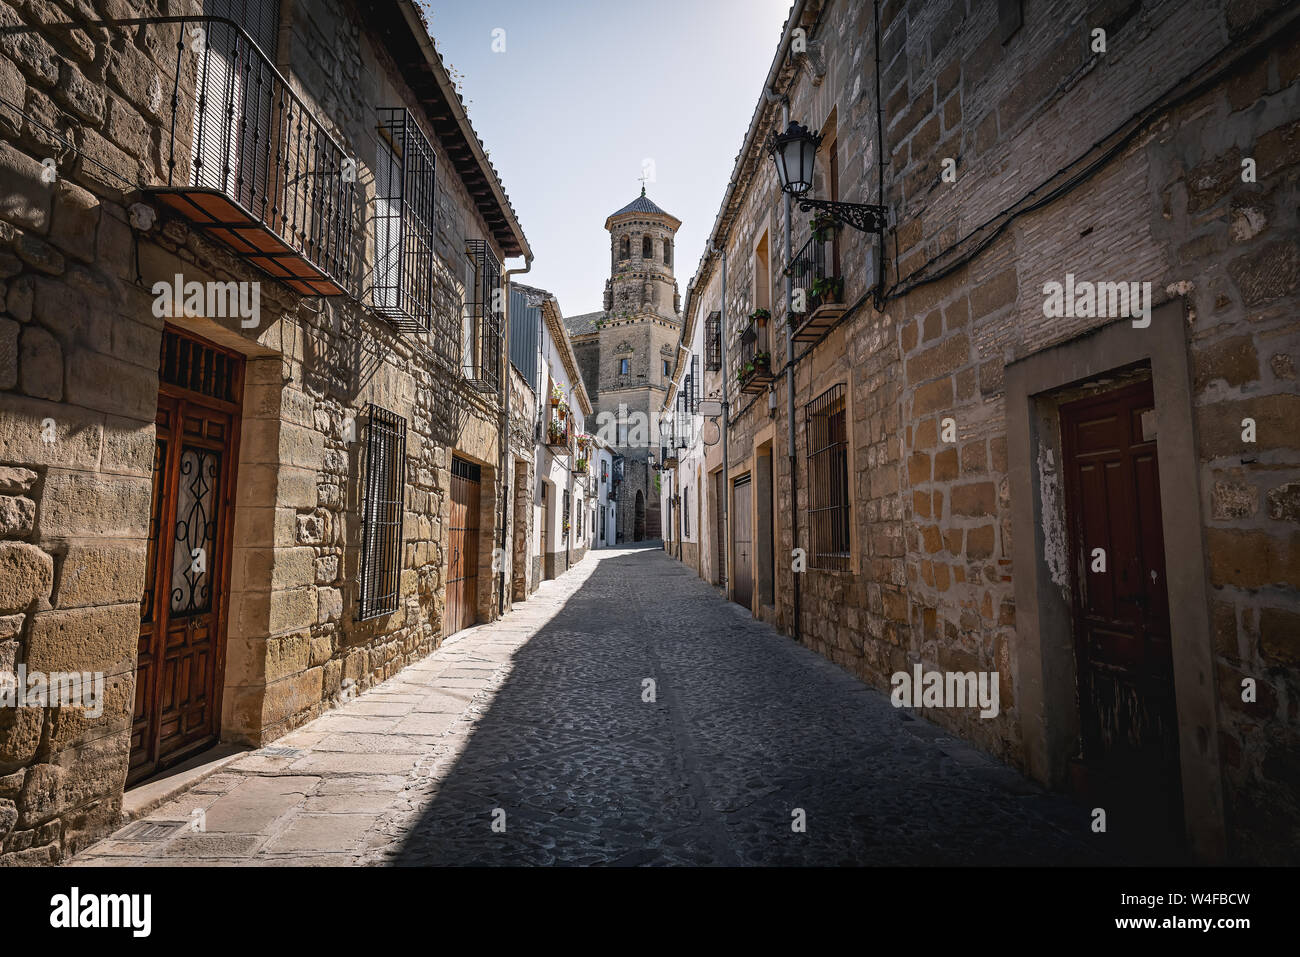 Calle medieval de Baeza con la vieja Torre Universitaria - Baeza, provincia de Jaén, en Andalucía, España Foto de stock